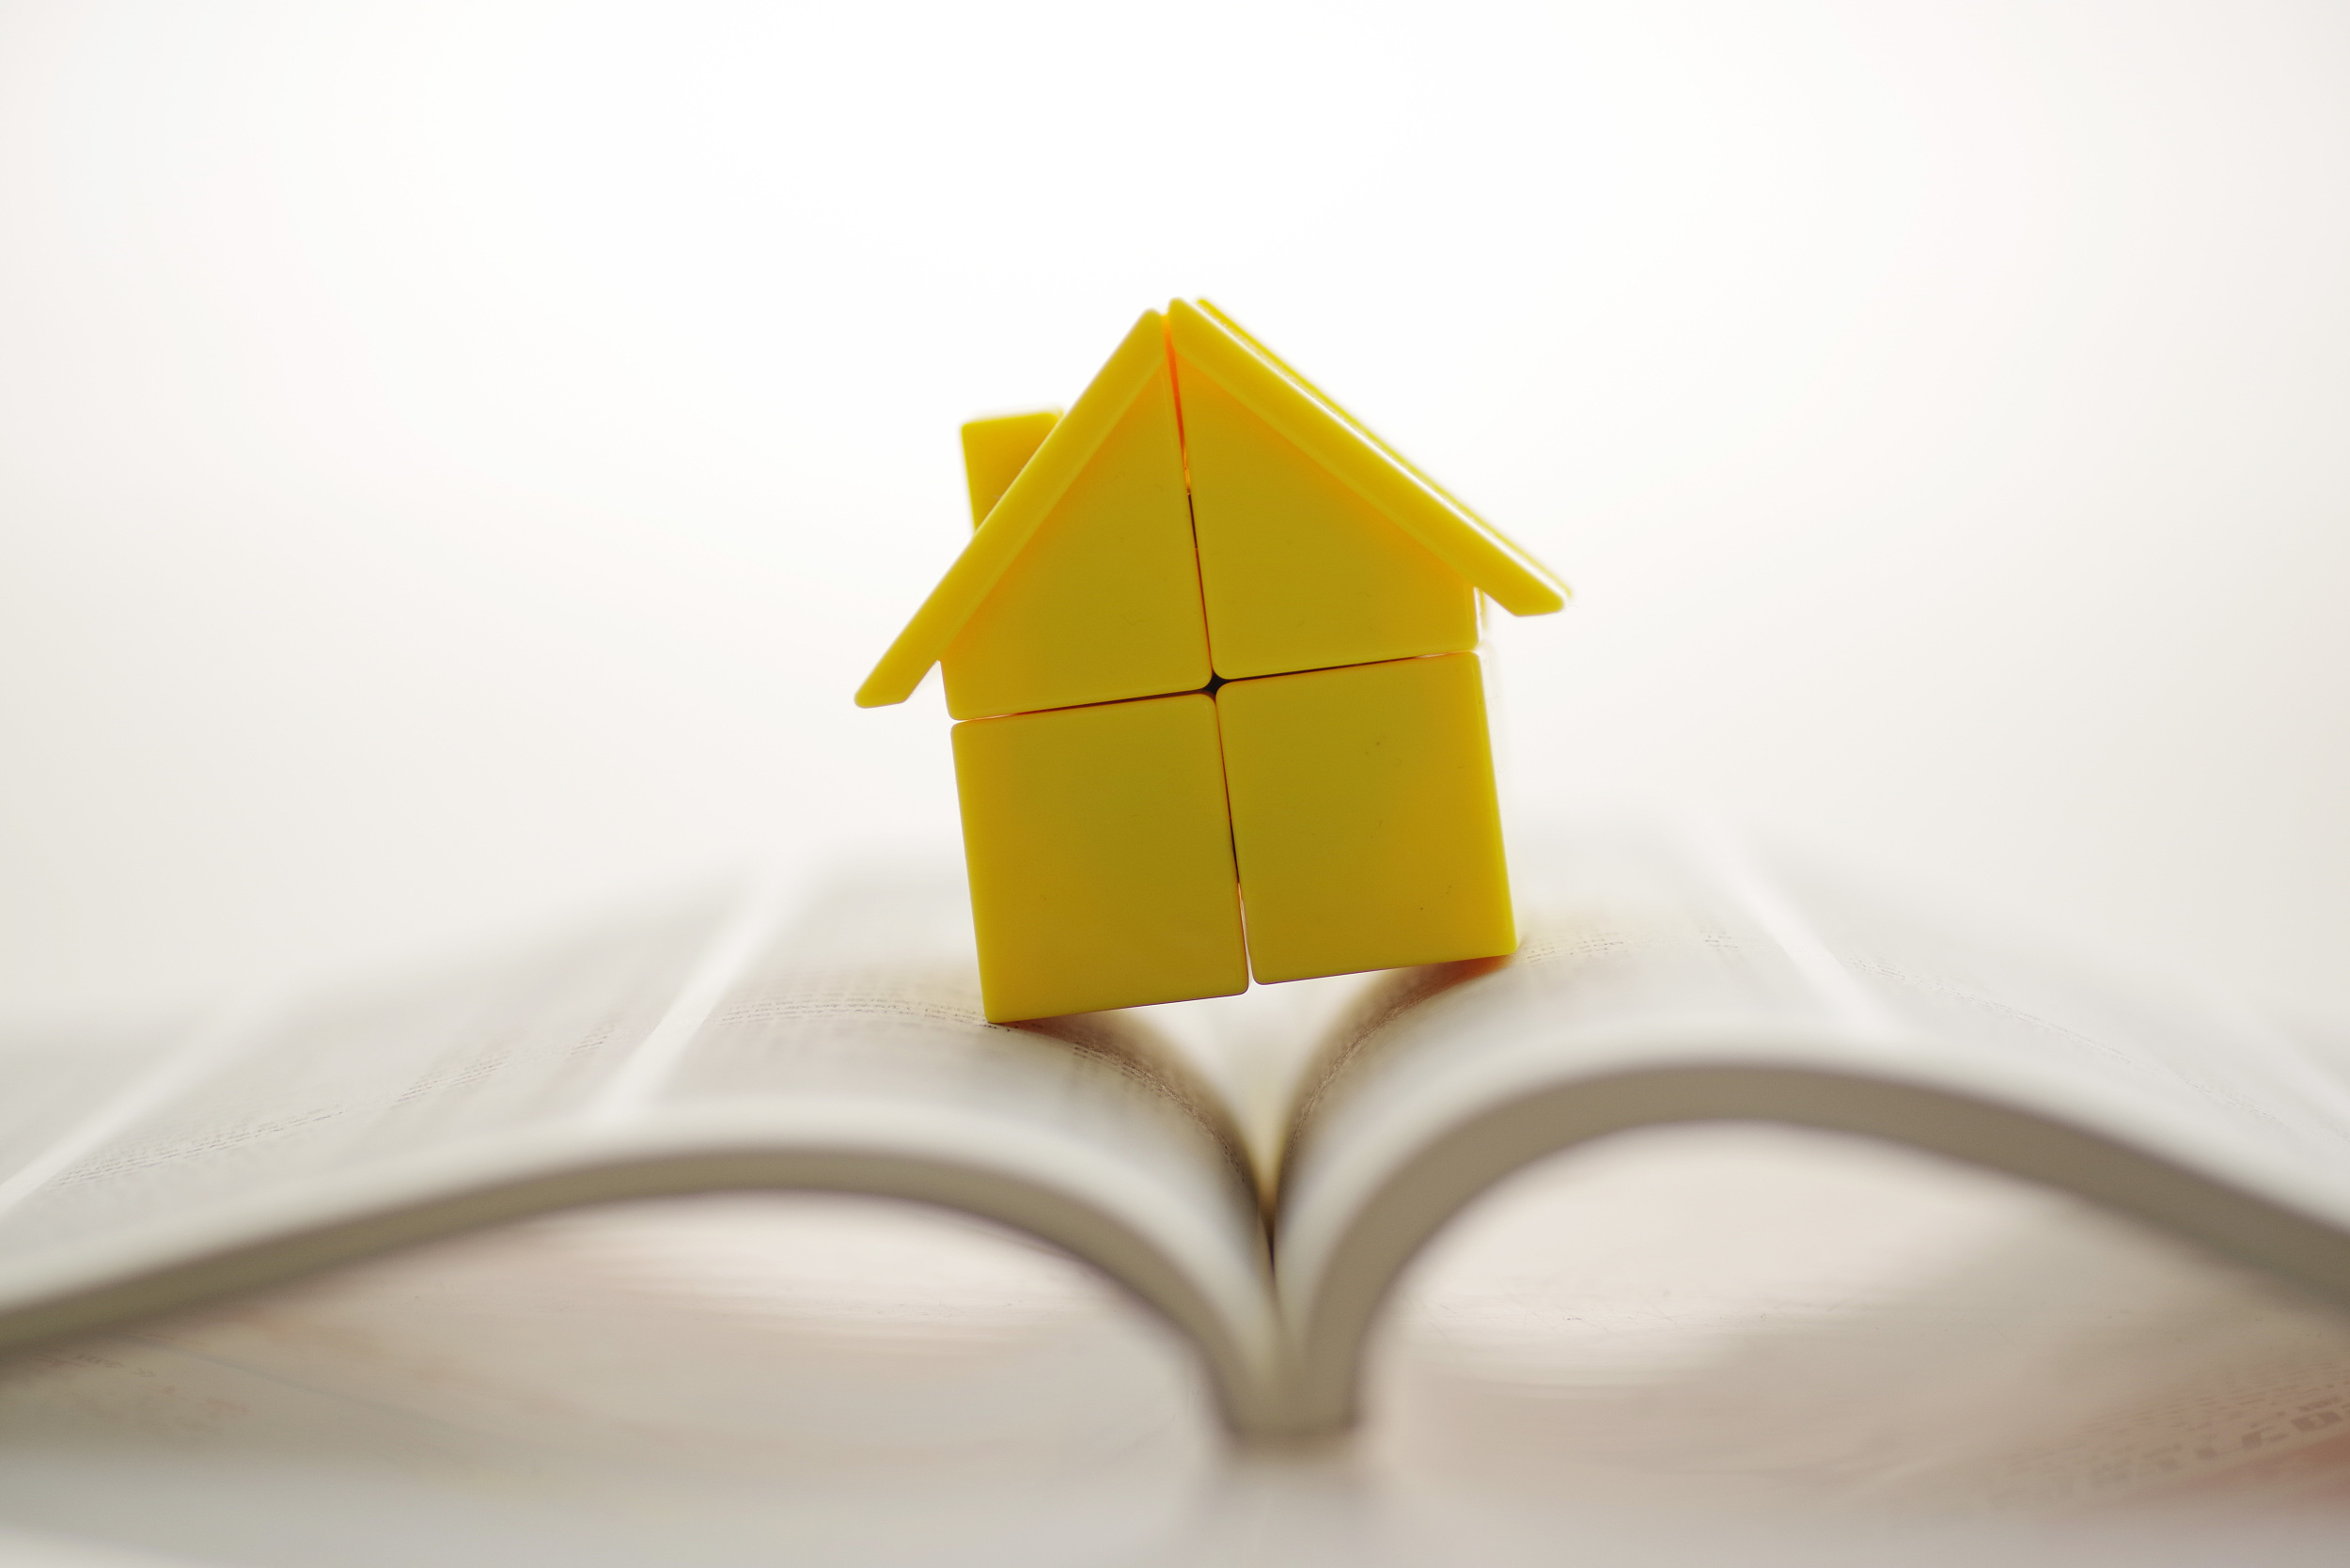 租房提取、申請公積金貸款需提供房產證明